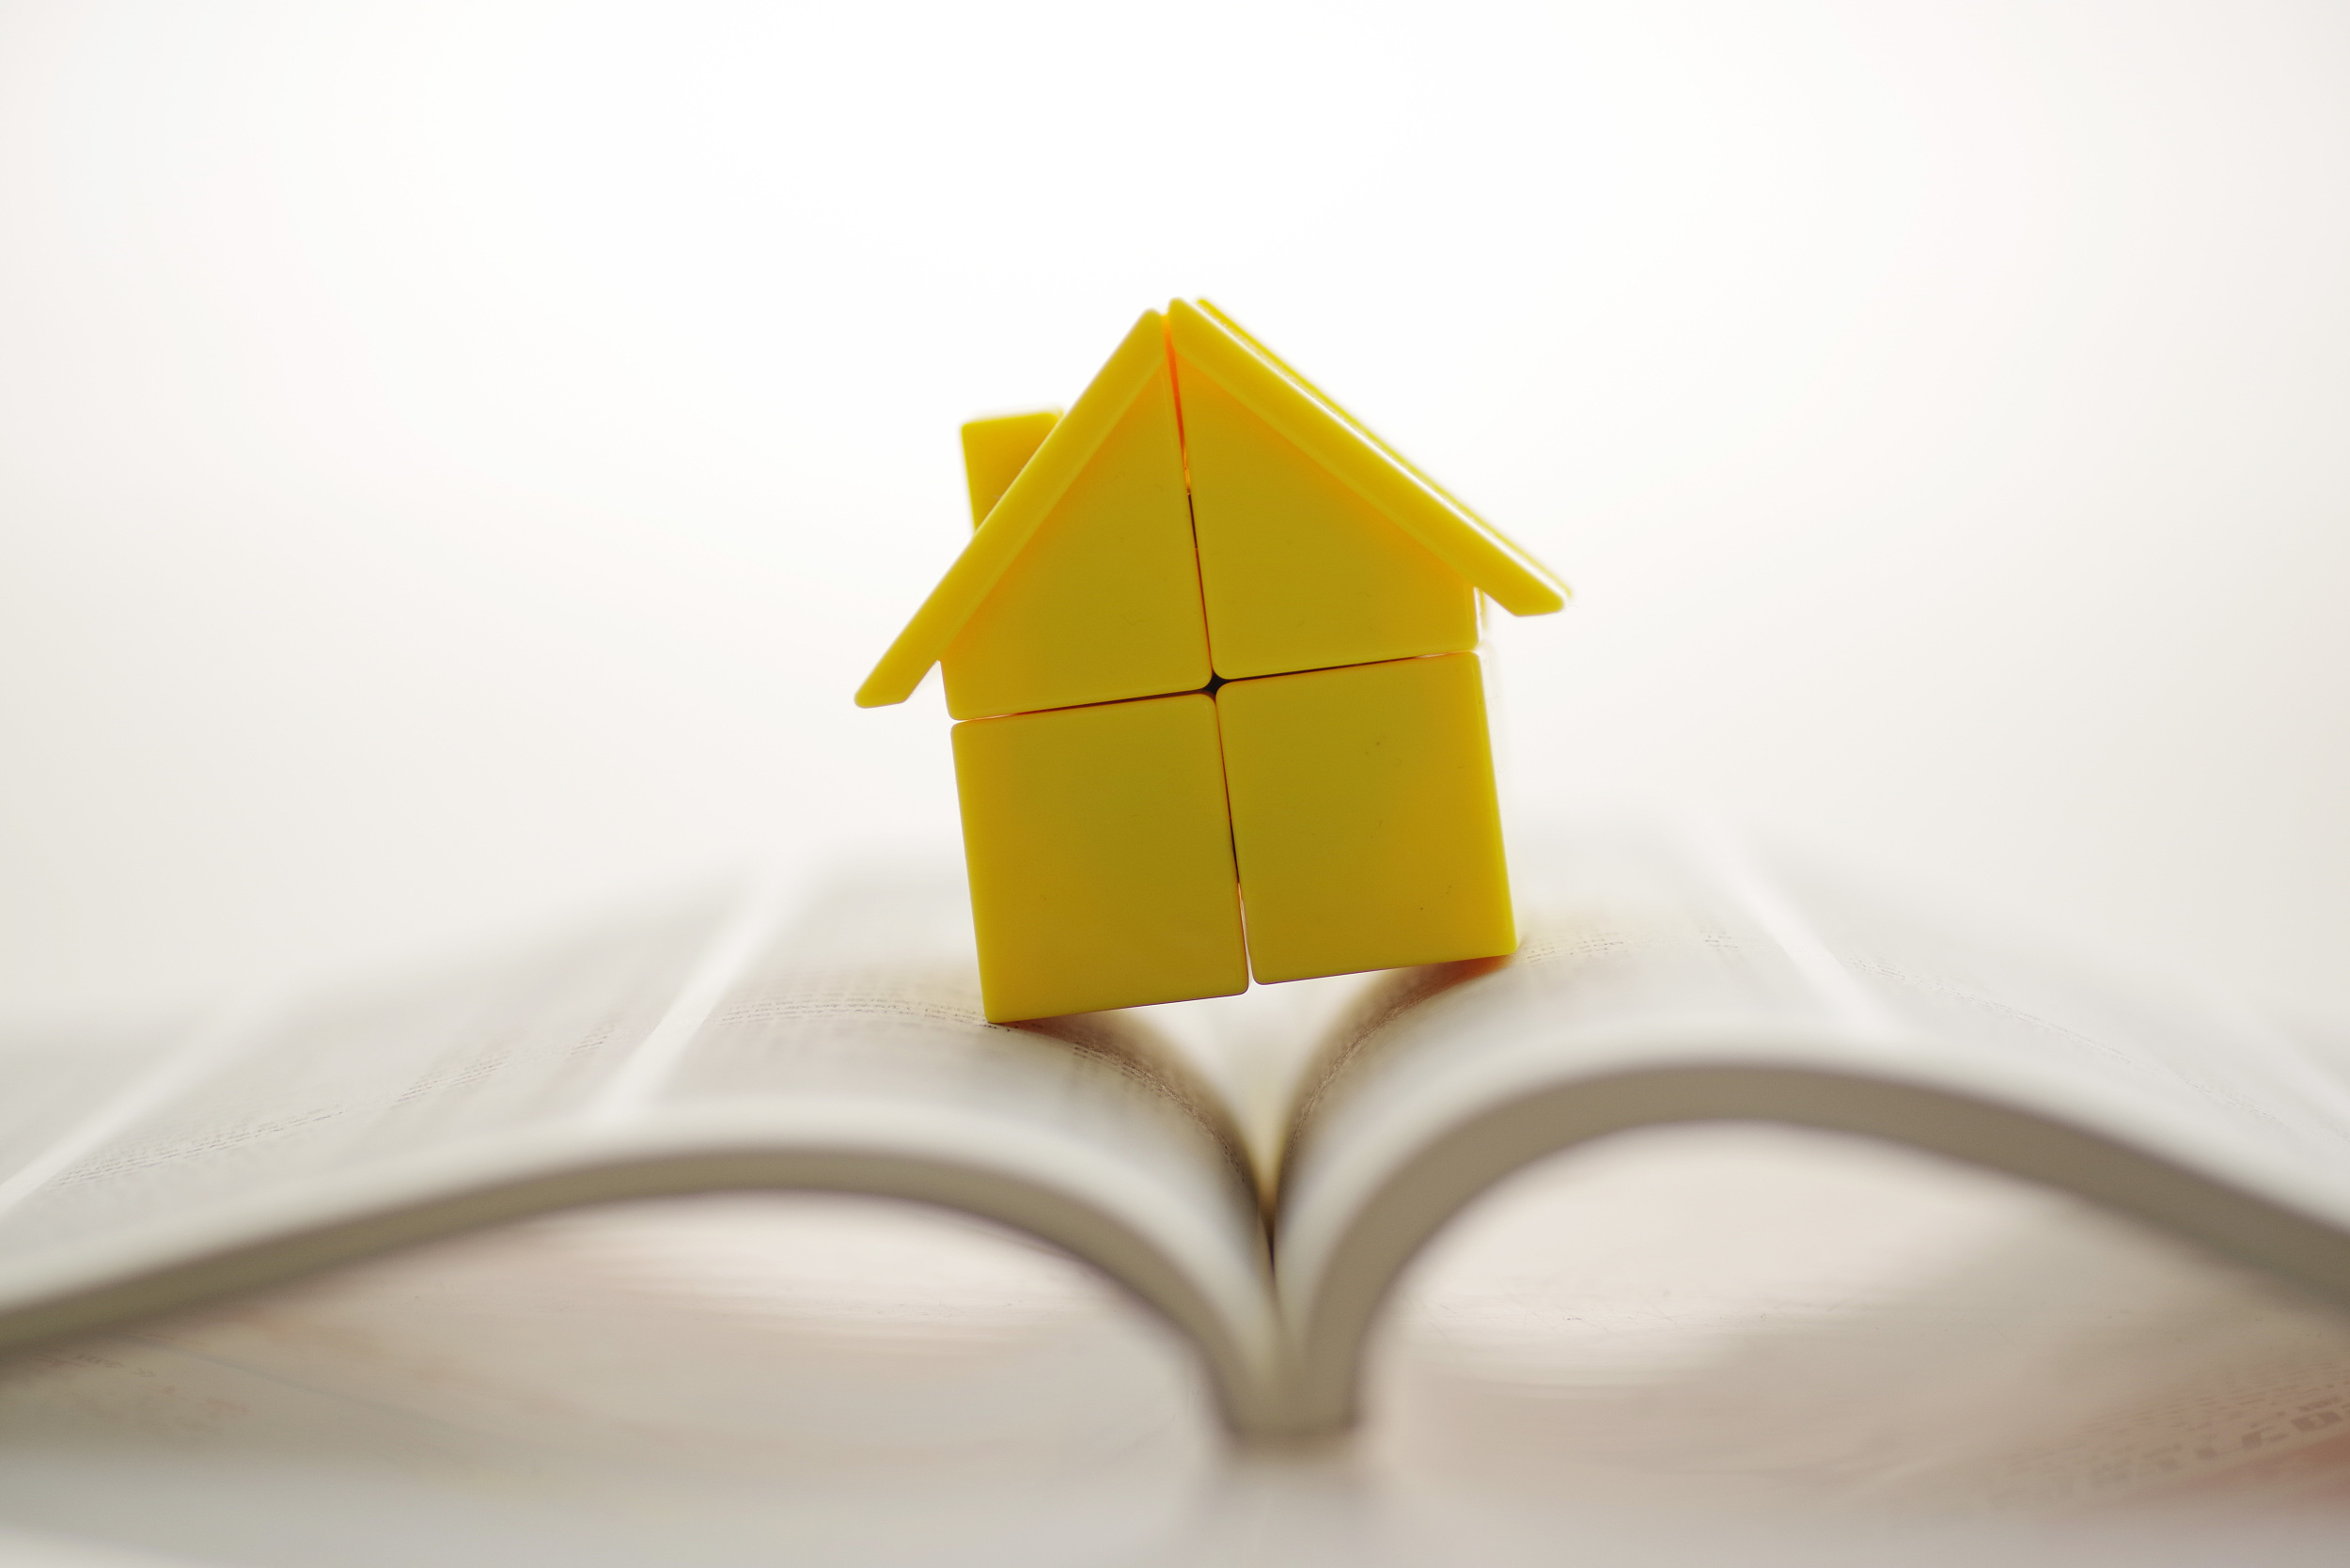 租房提取、申請公積金貸款需提供房產證明